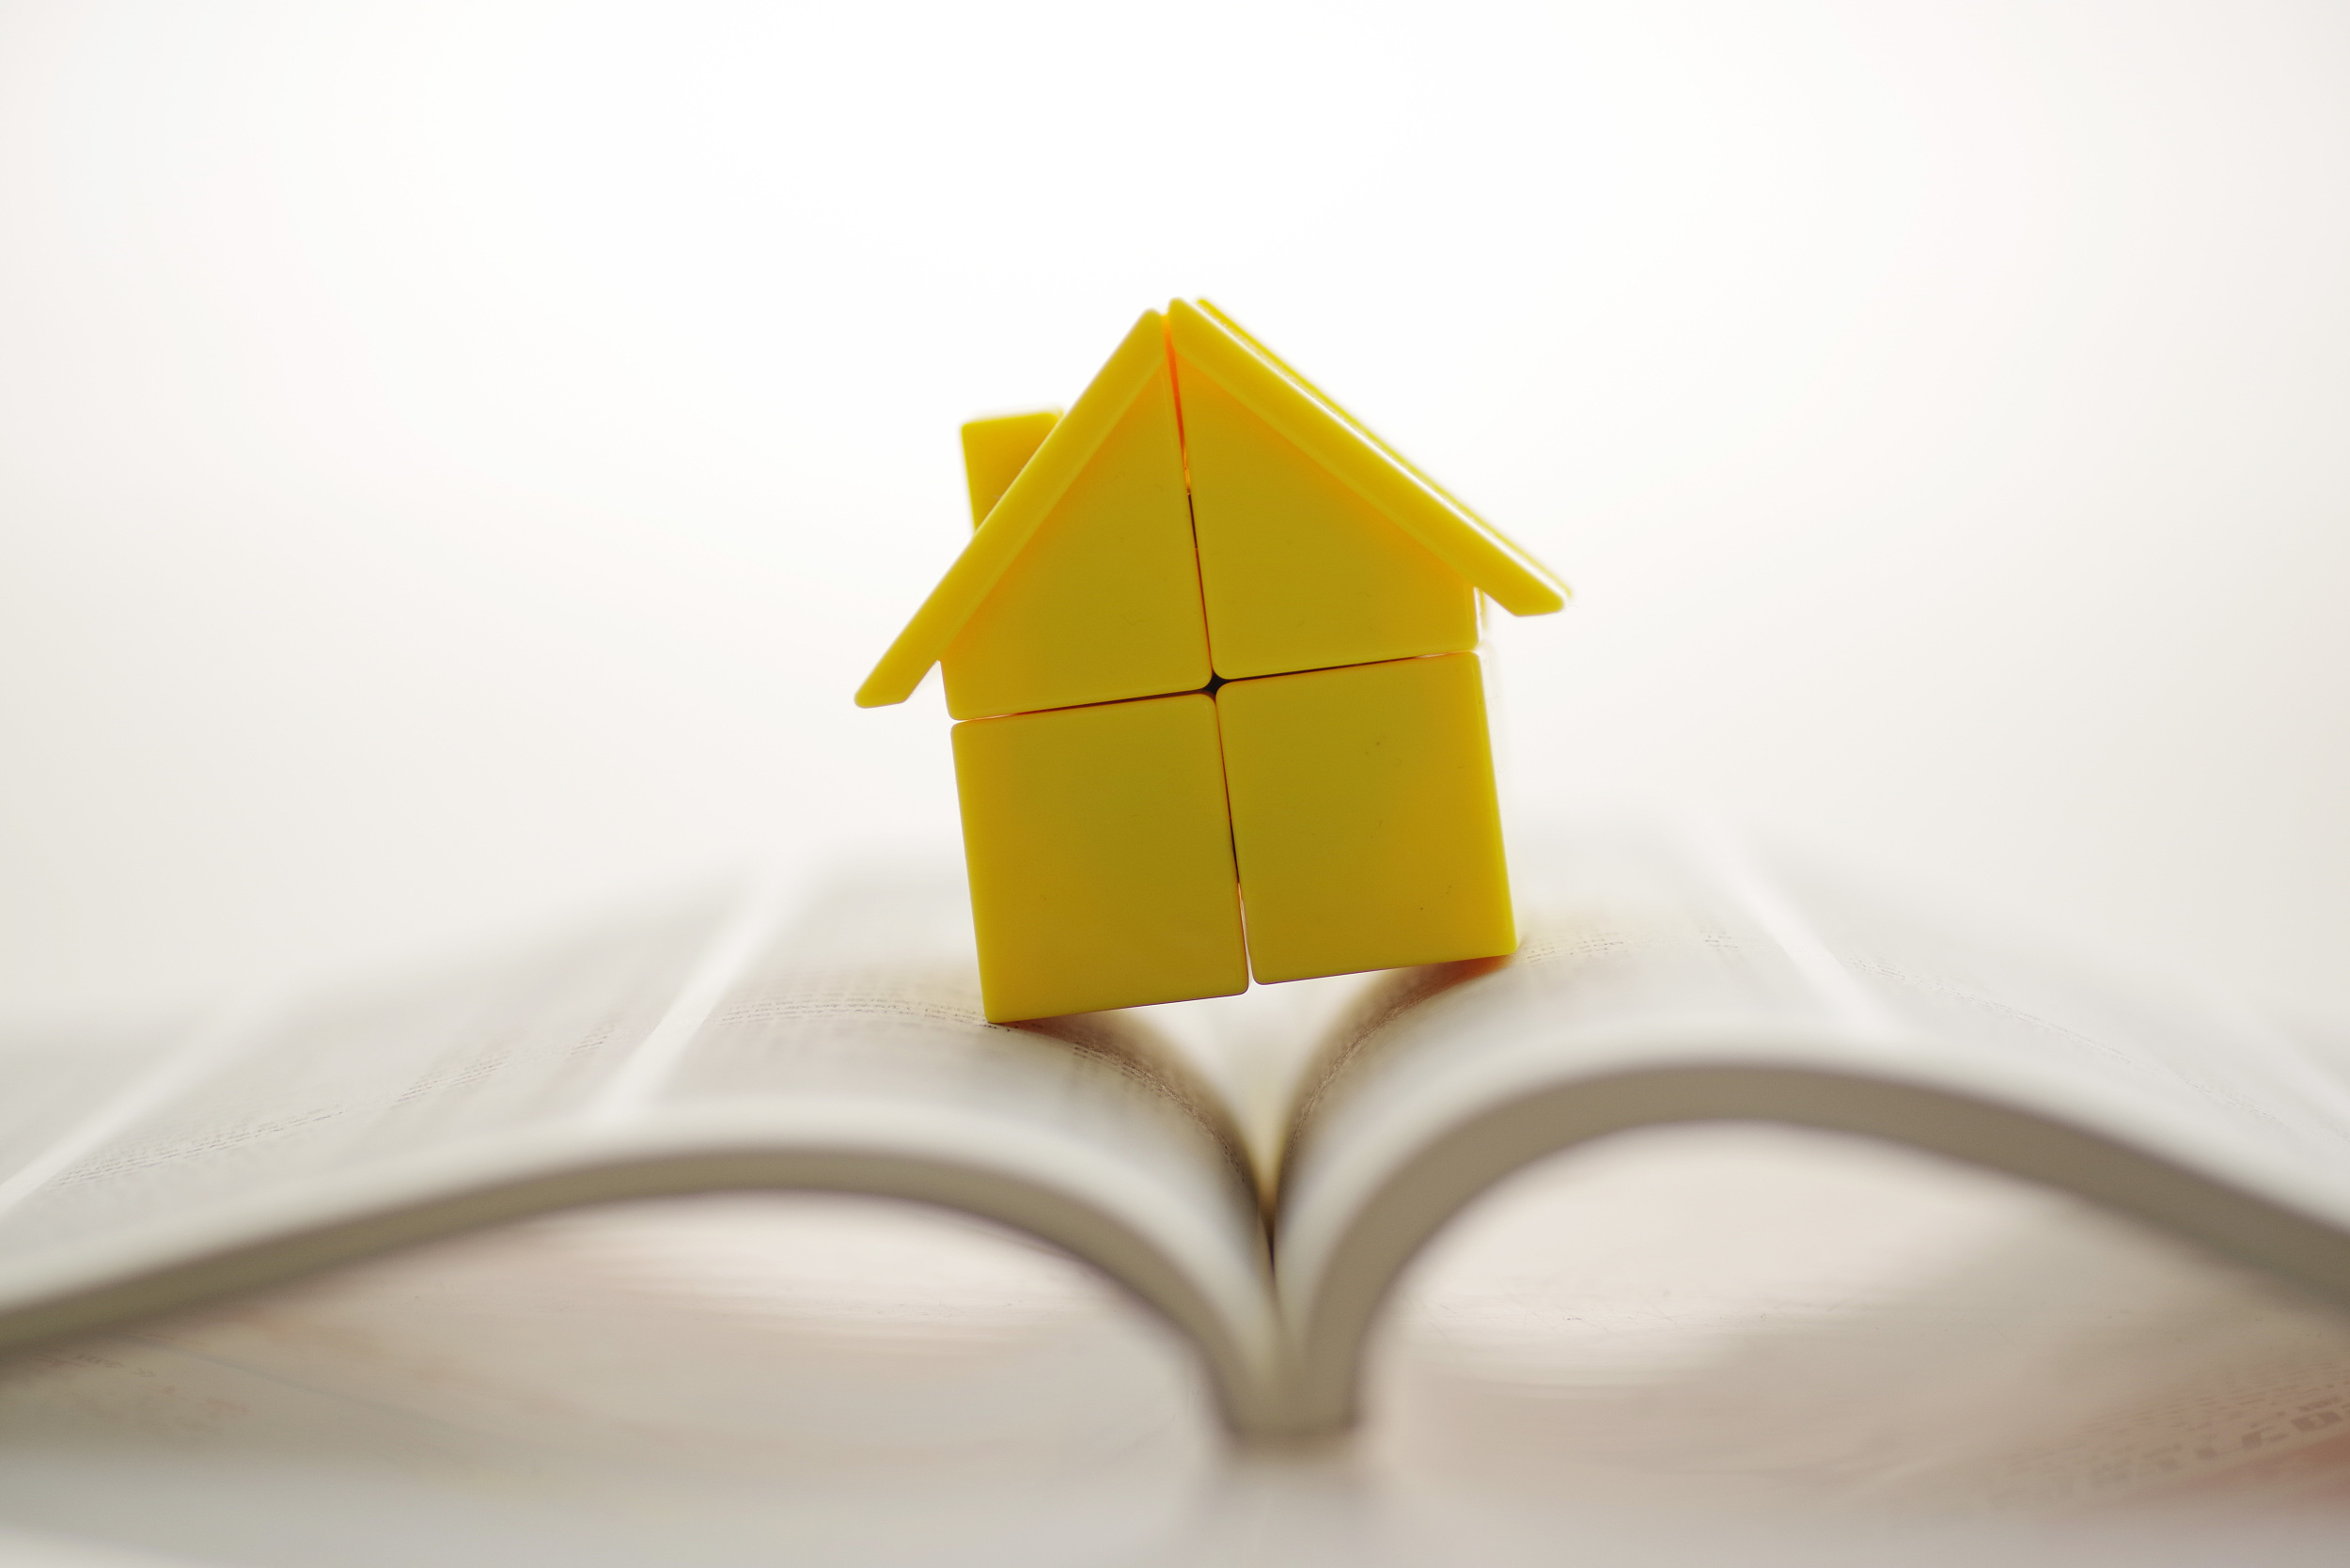 租房提取、申請公積金貸款需提供房產證明